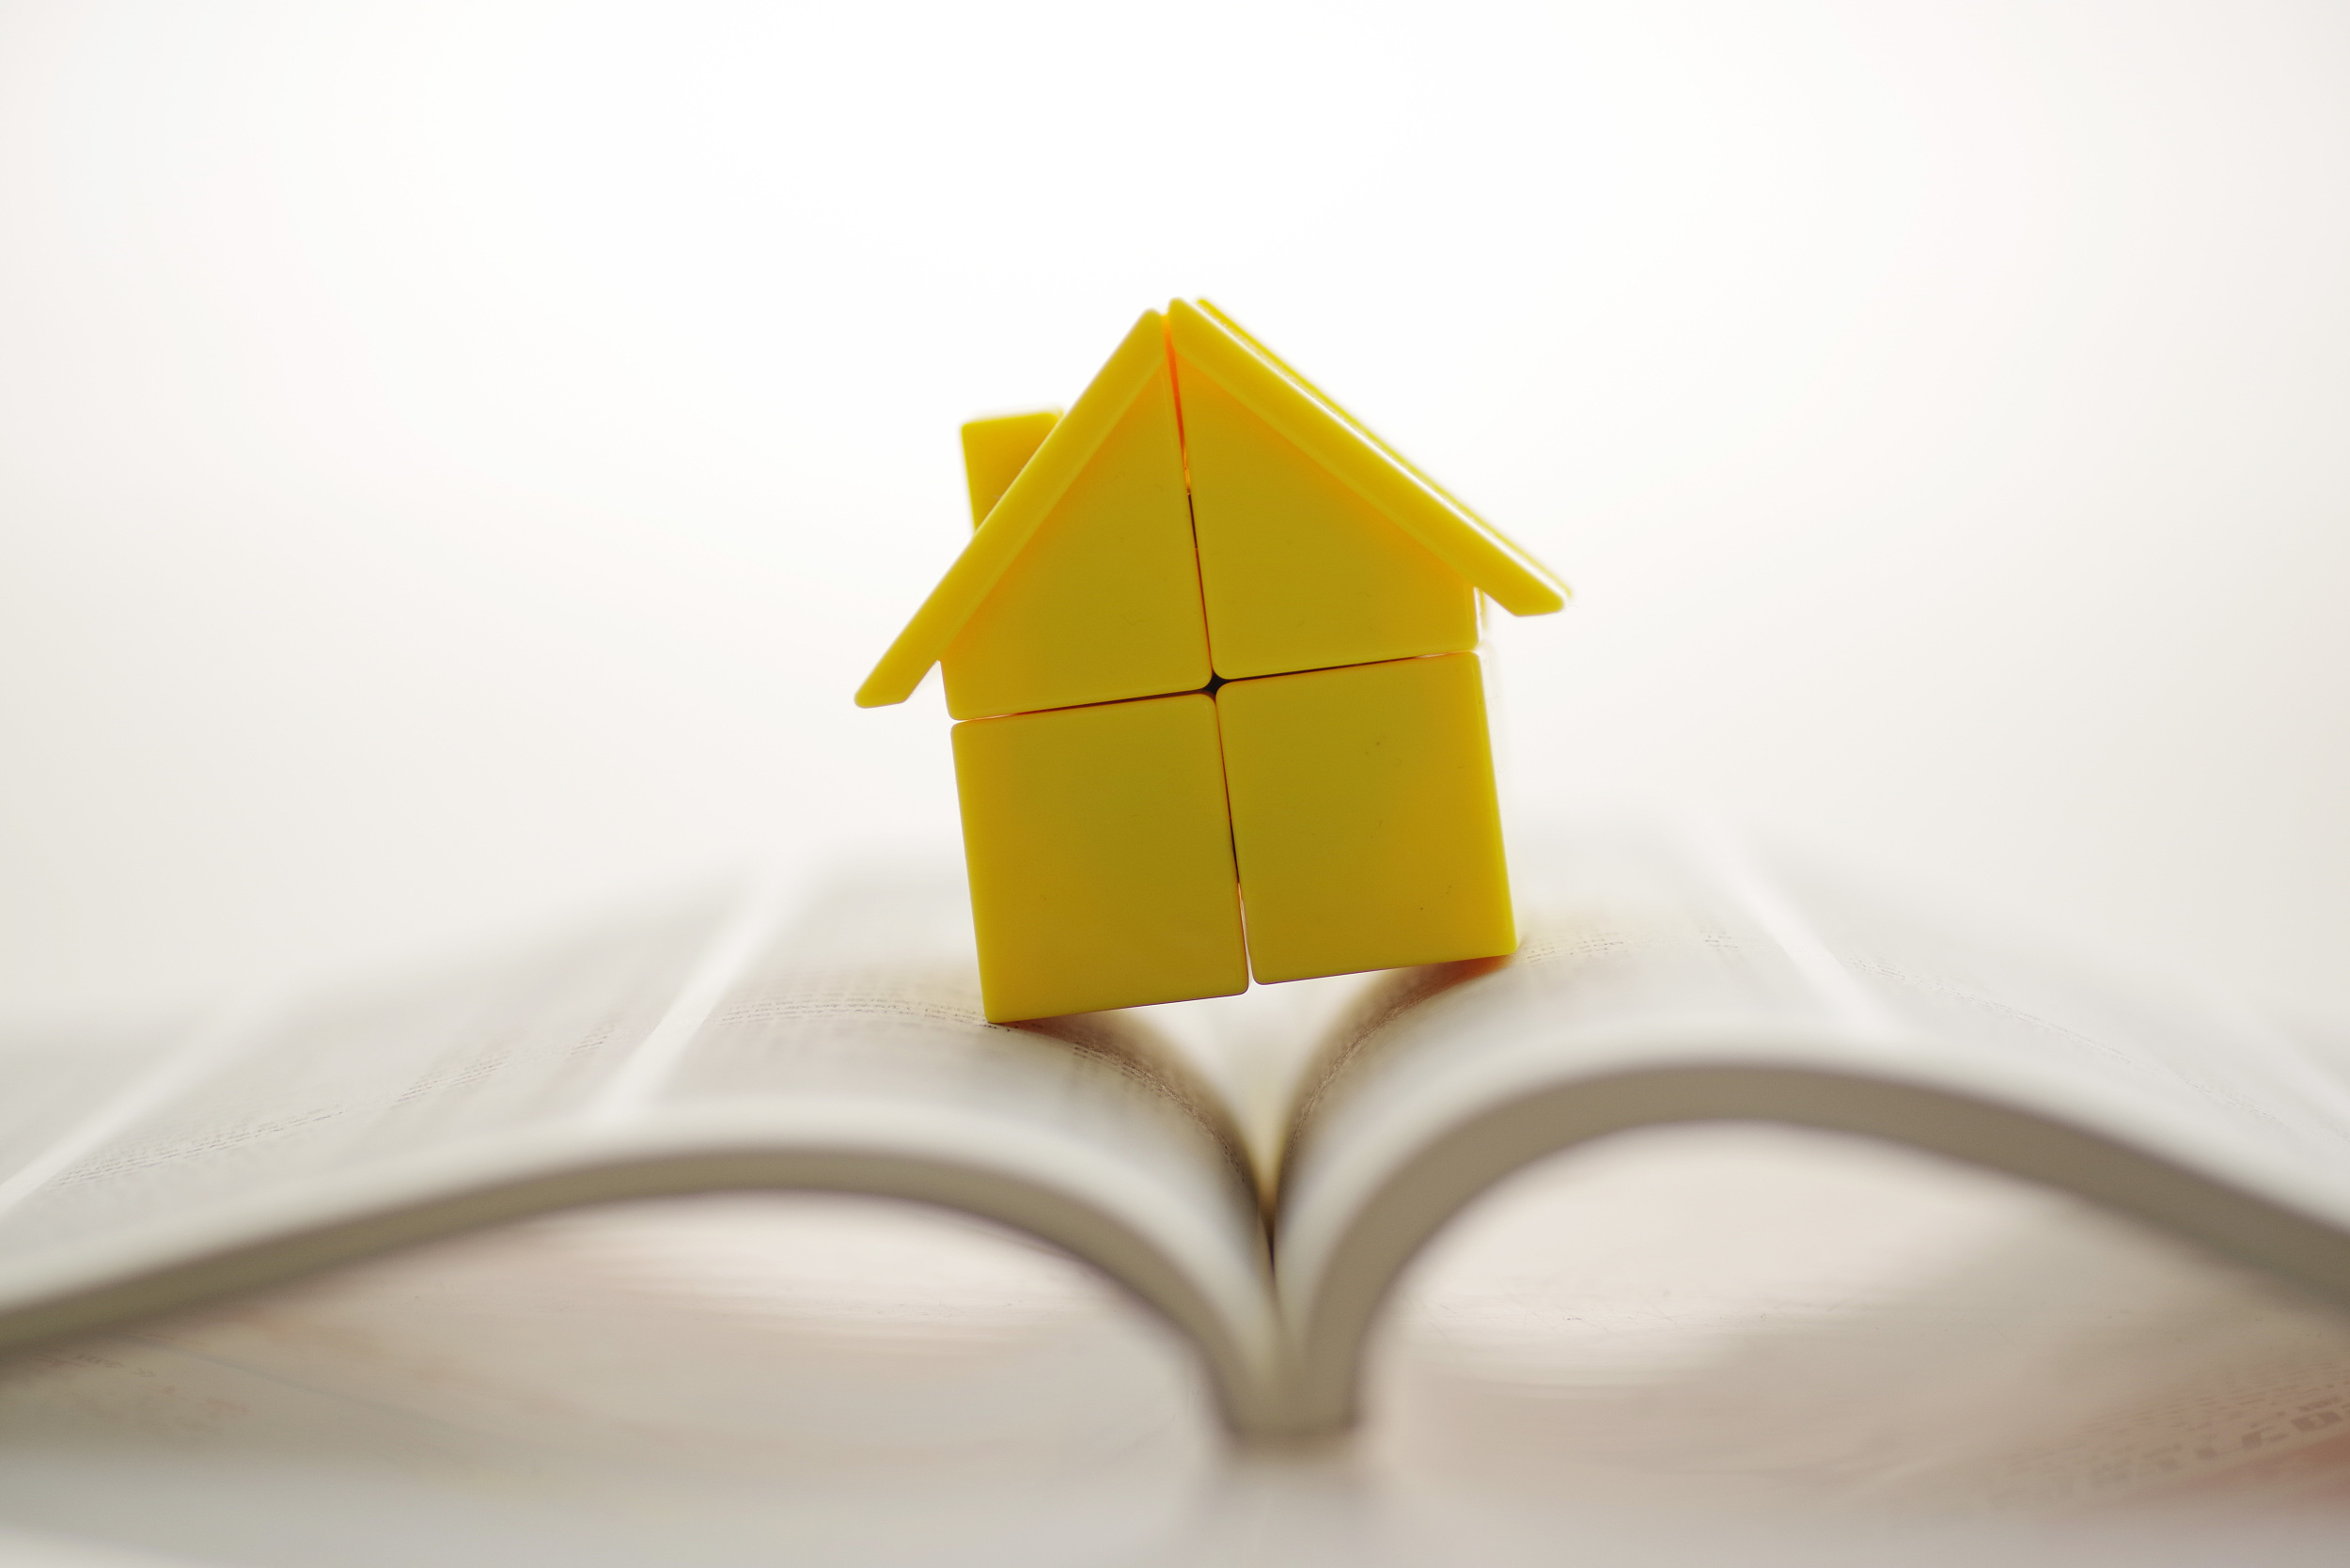 租房提取、申請公積金貸款需提供房產證明